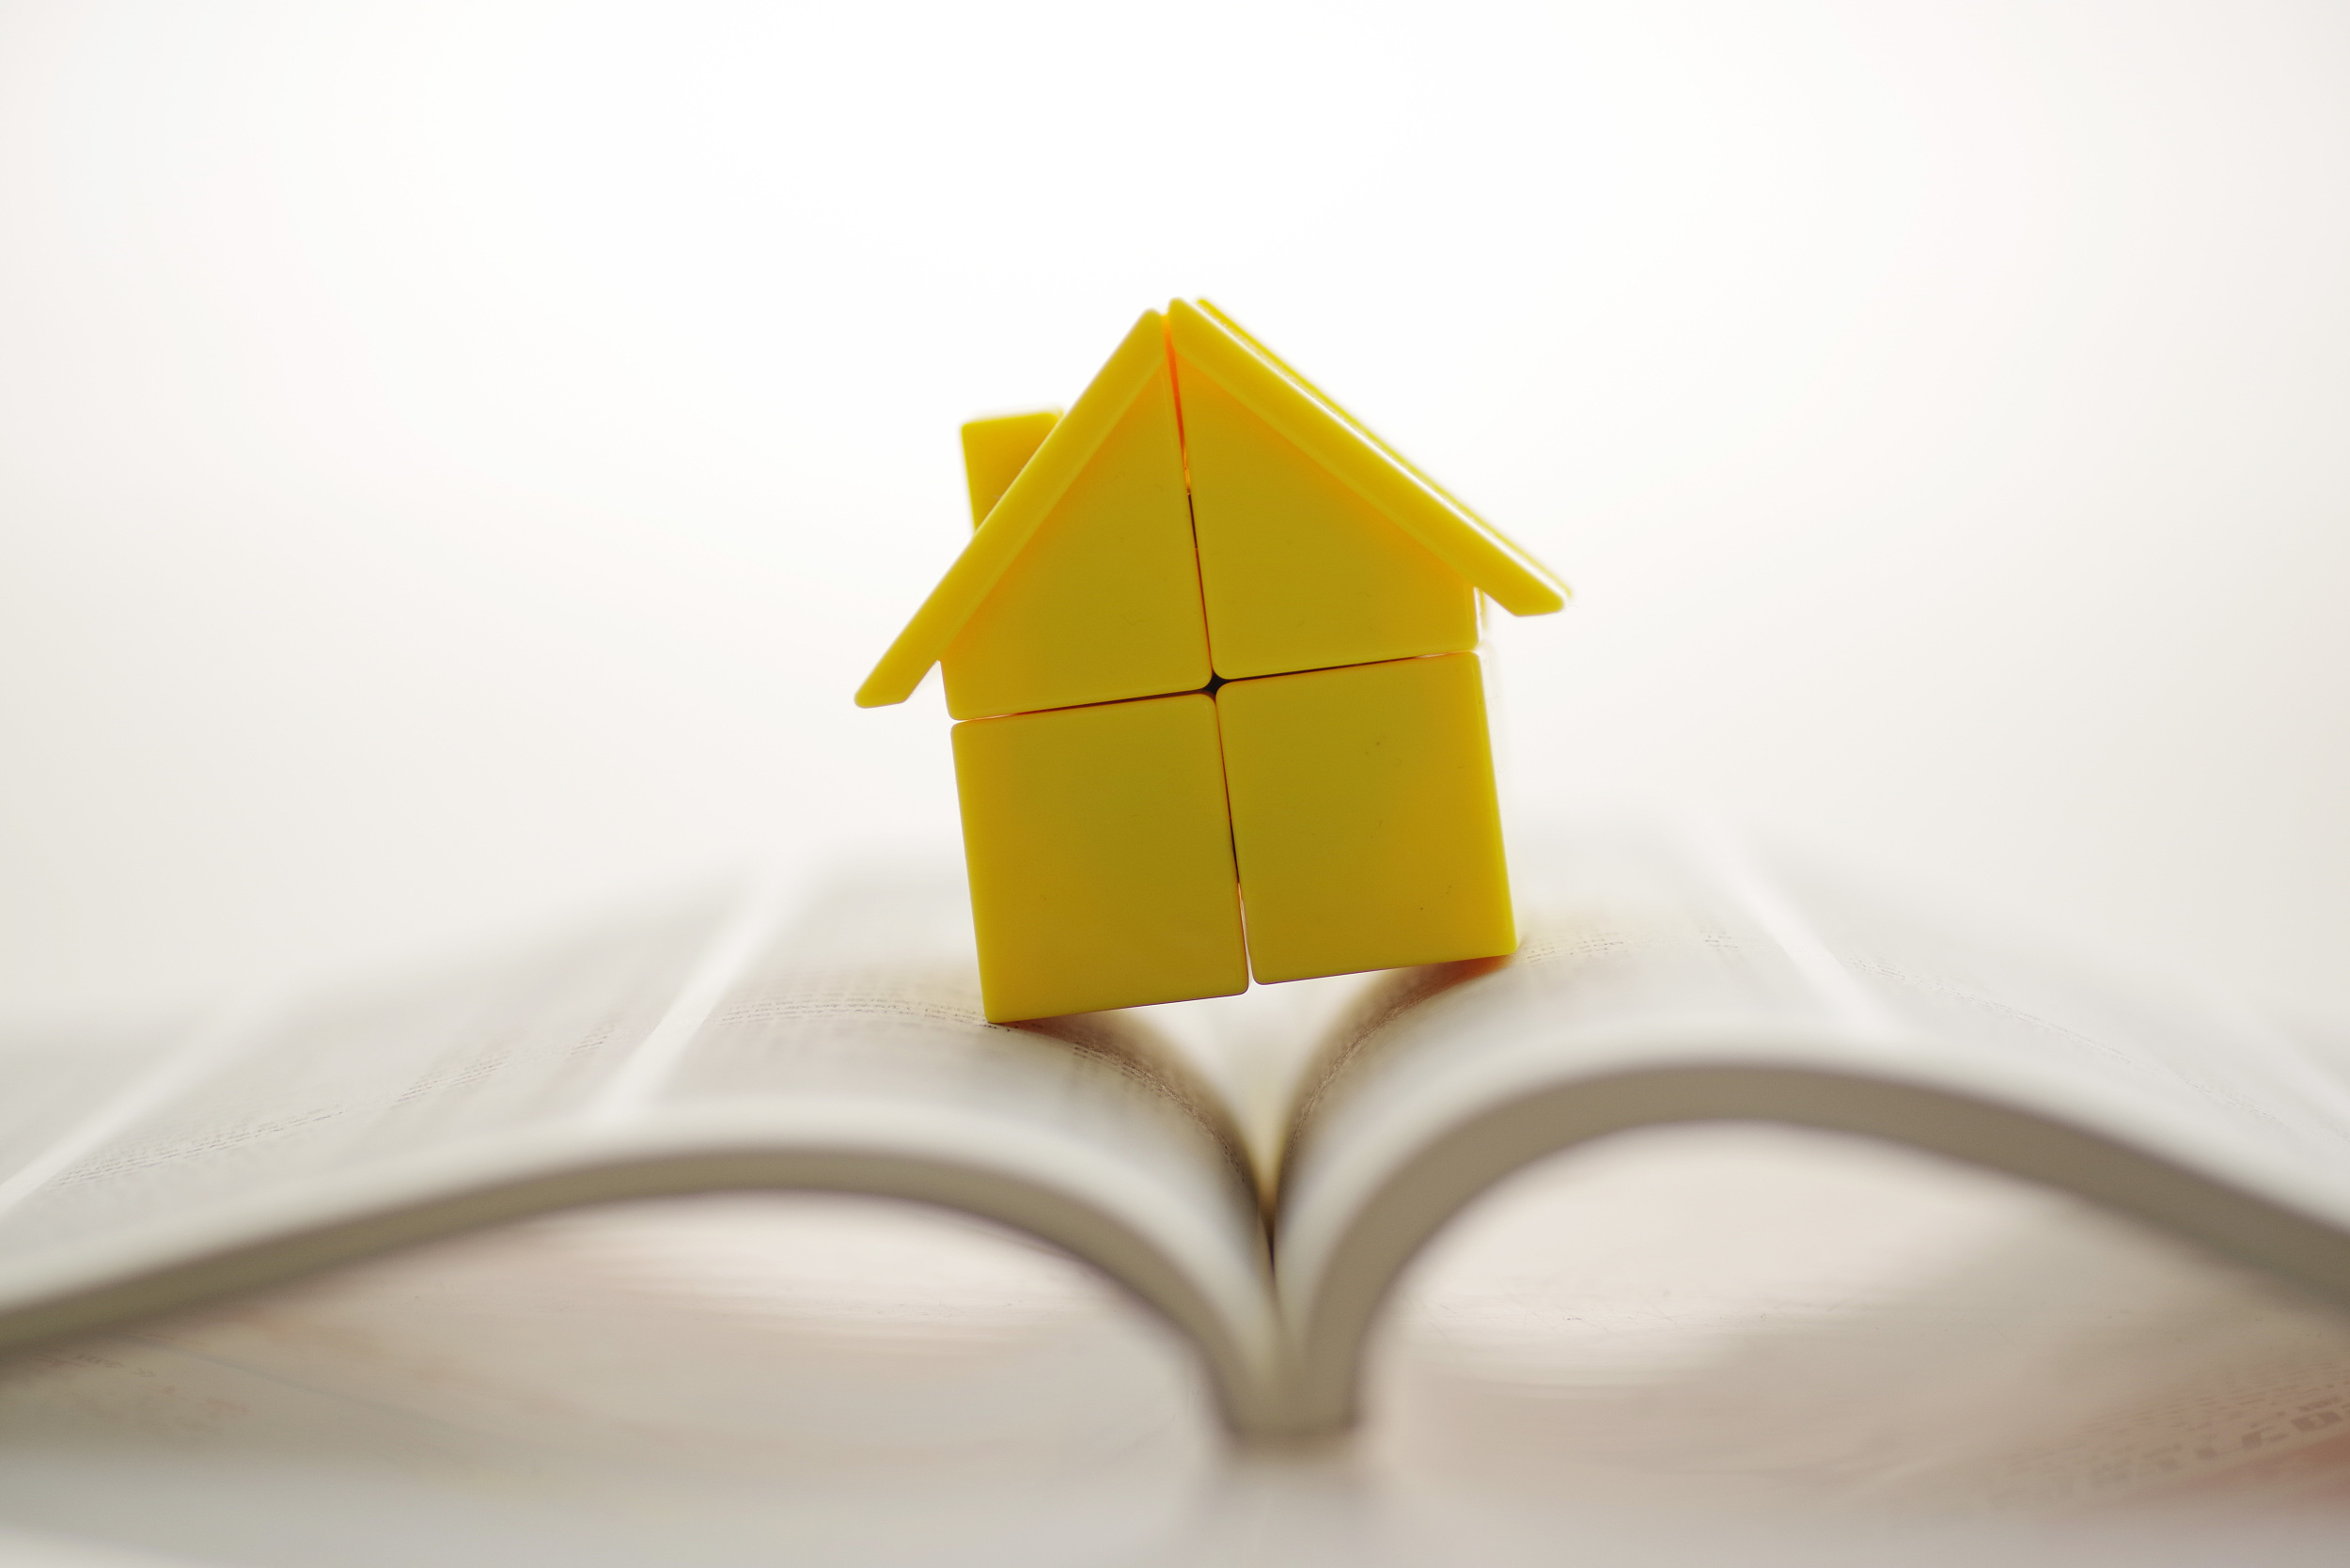 租房提取、申請公積金貸款需提供房產證明